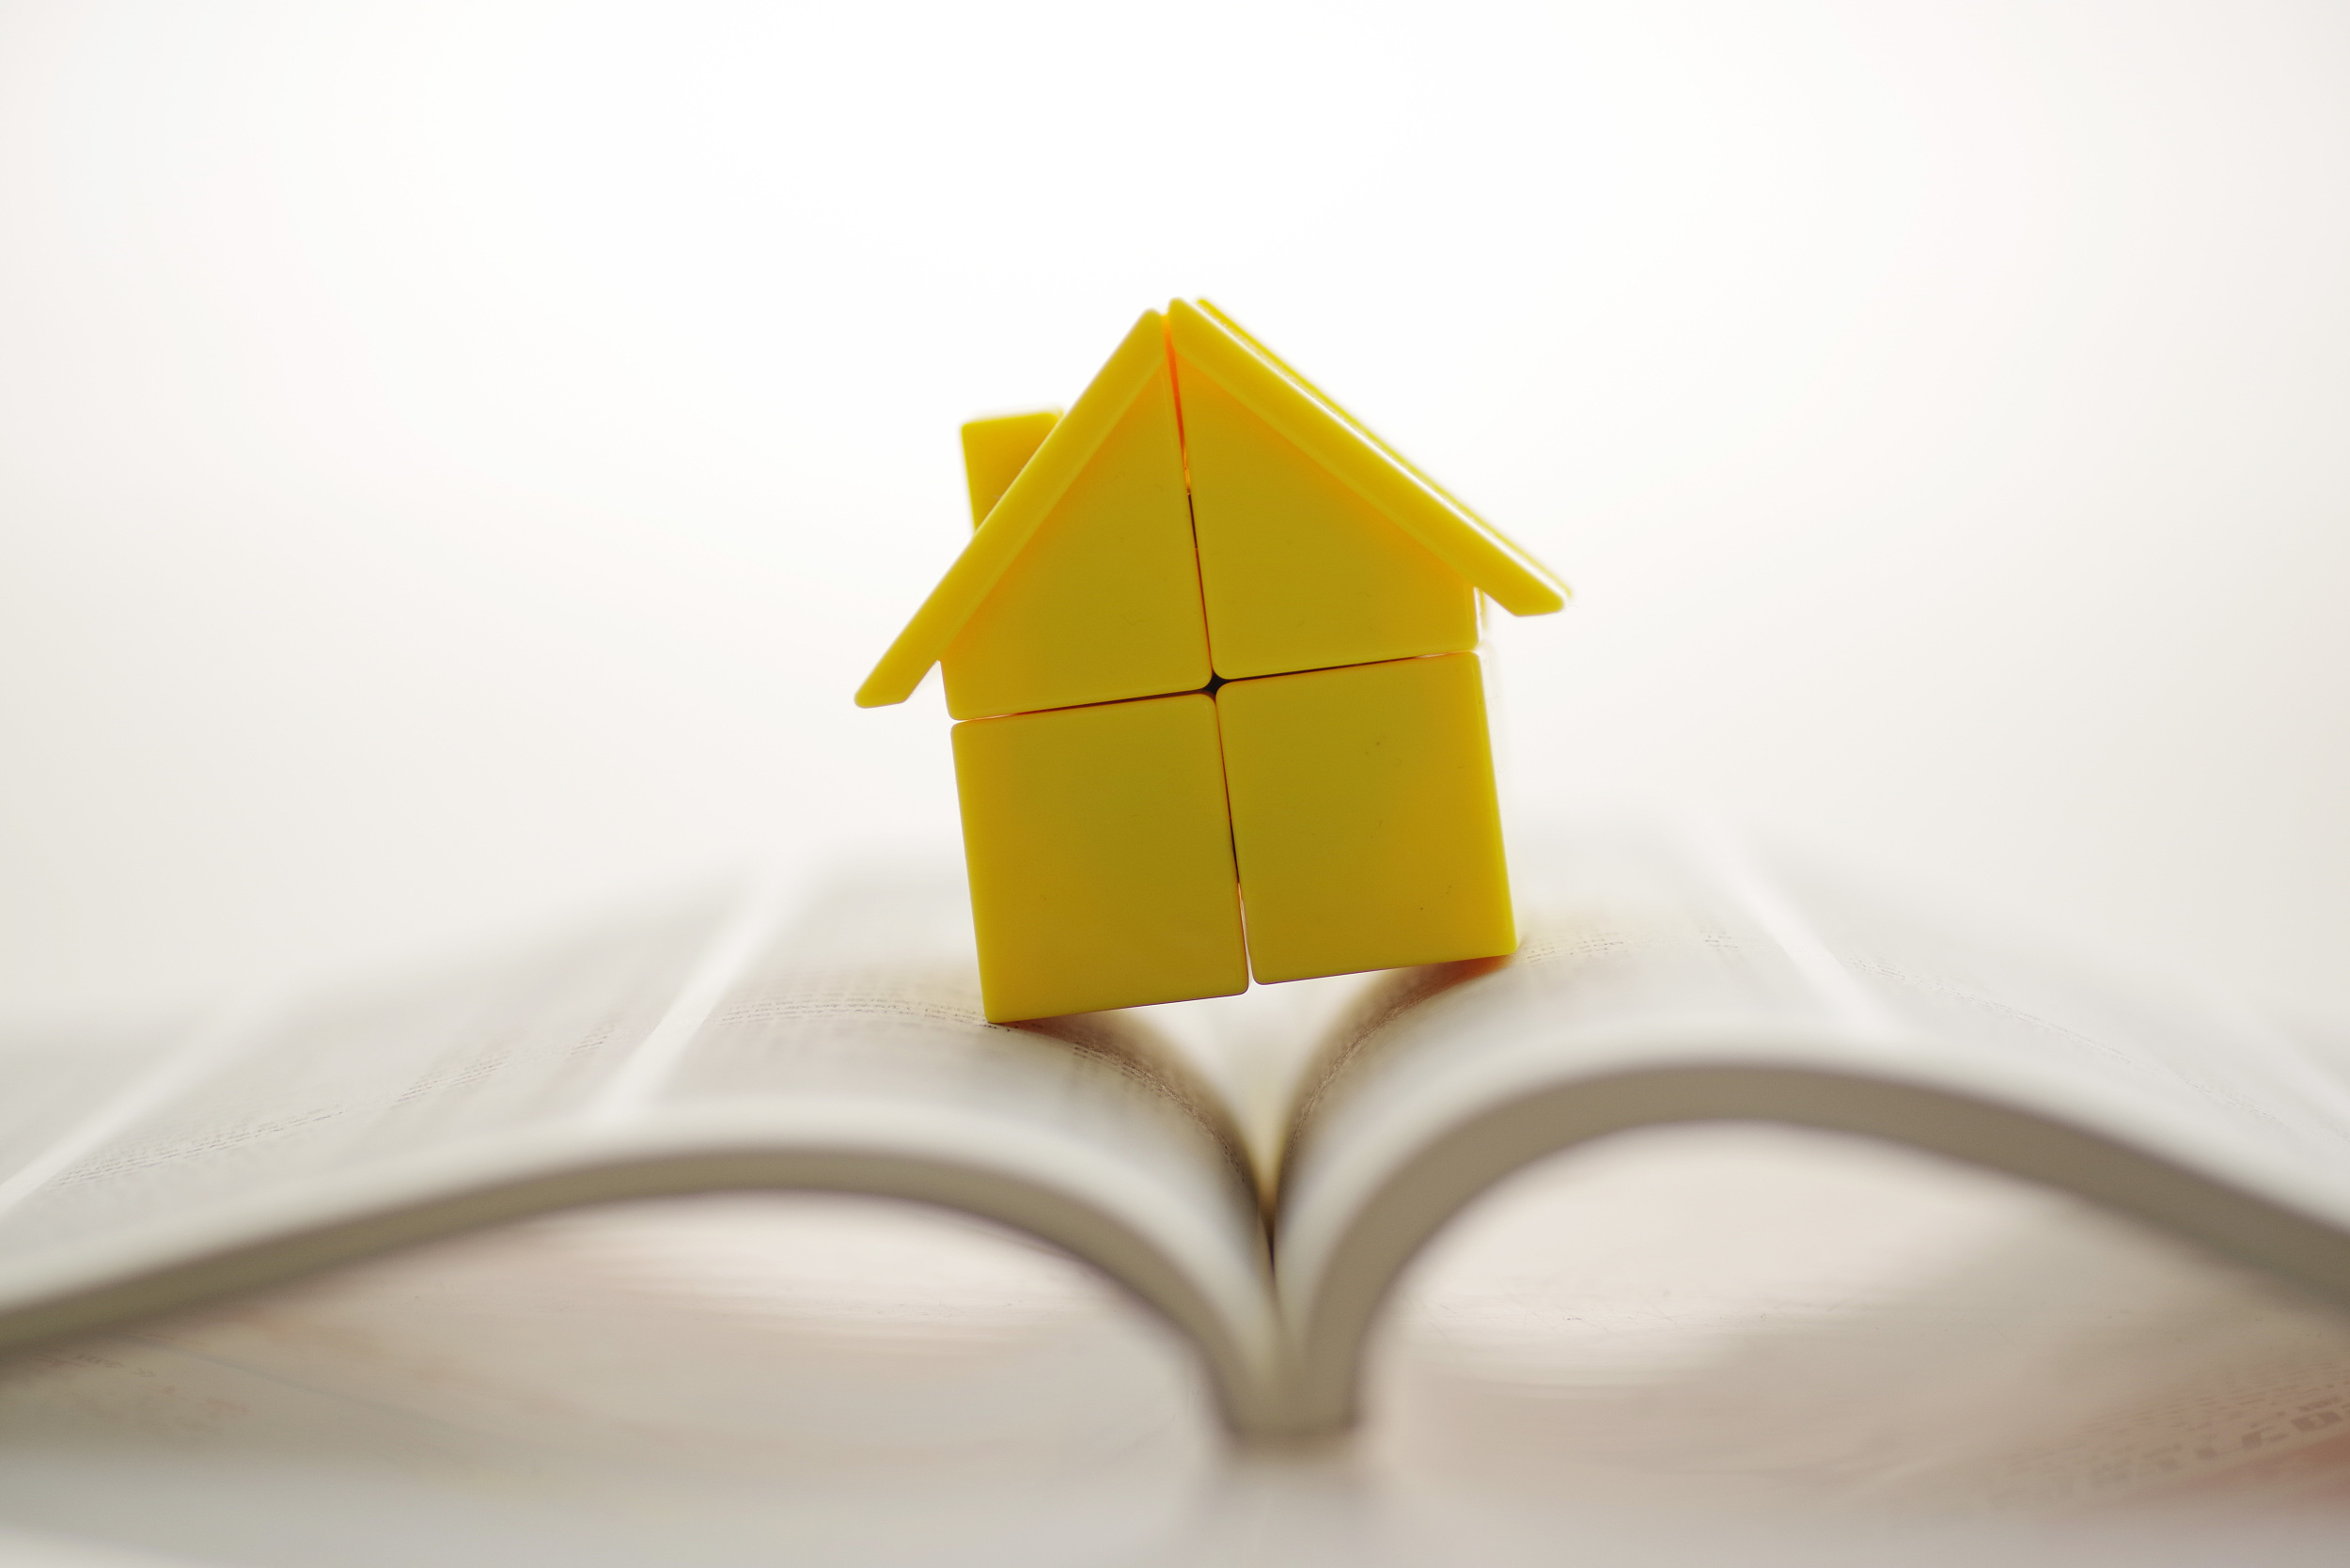 租房提取、申請公積金貸款需提供房產證明